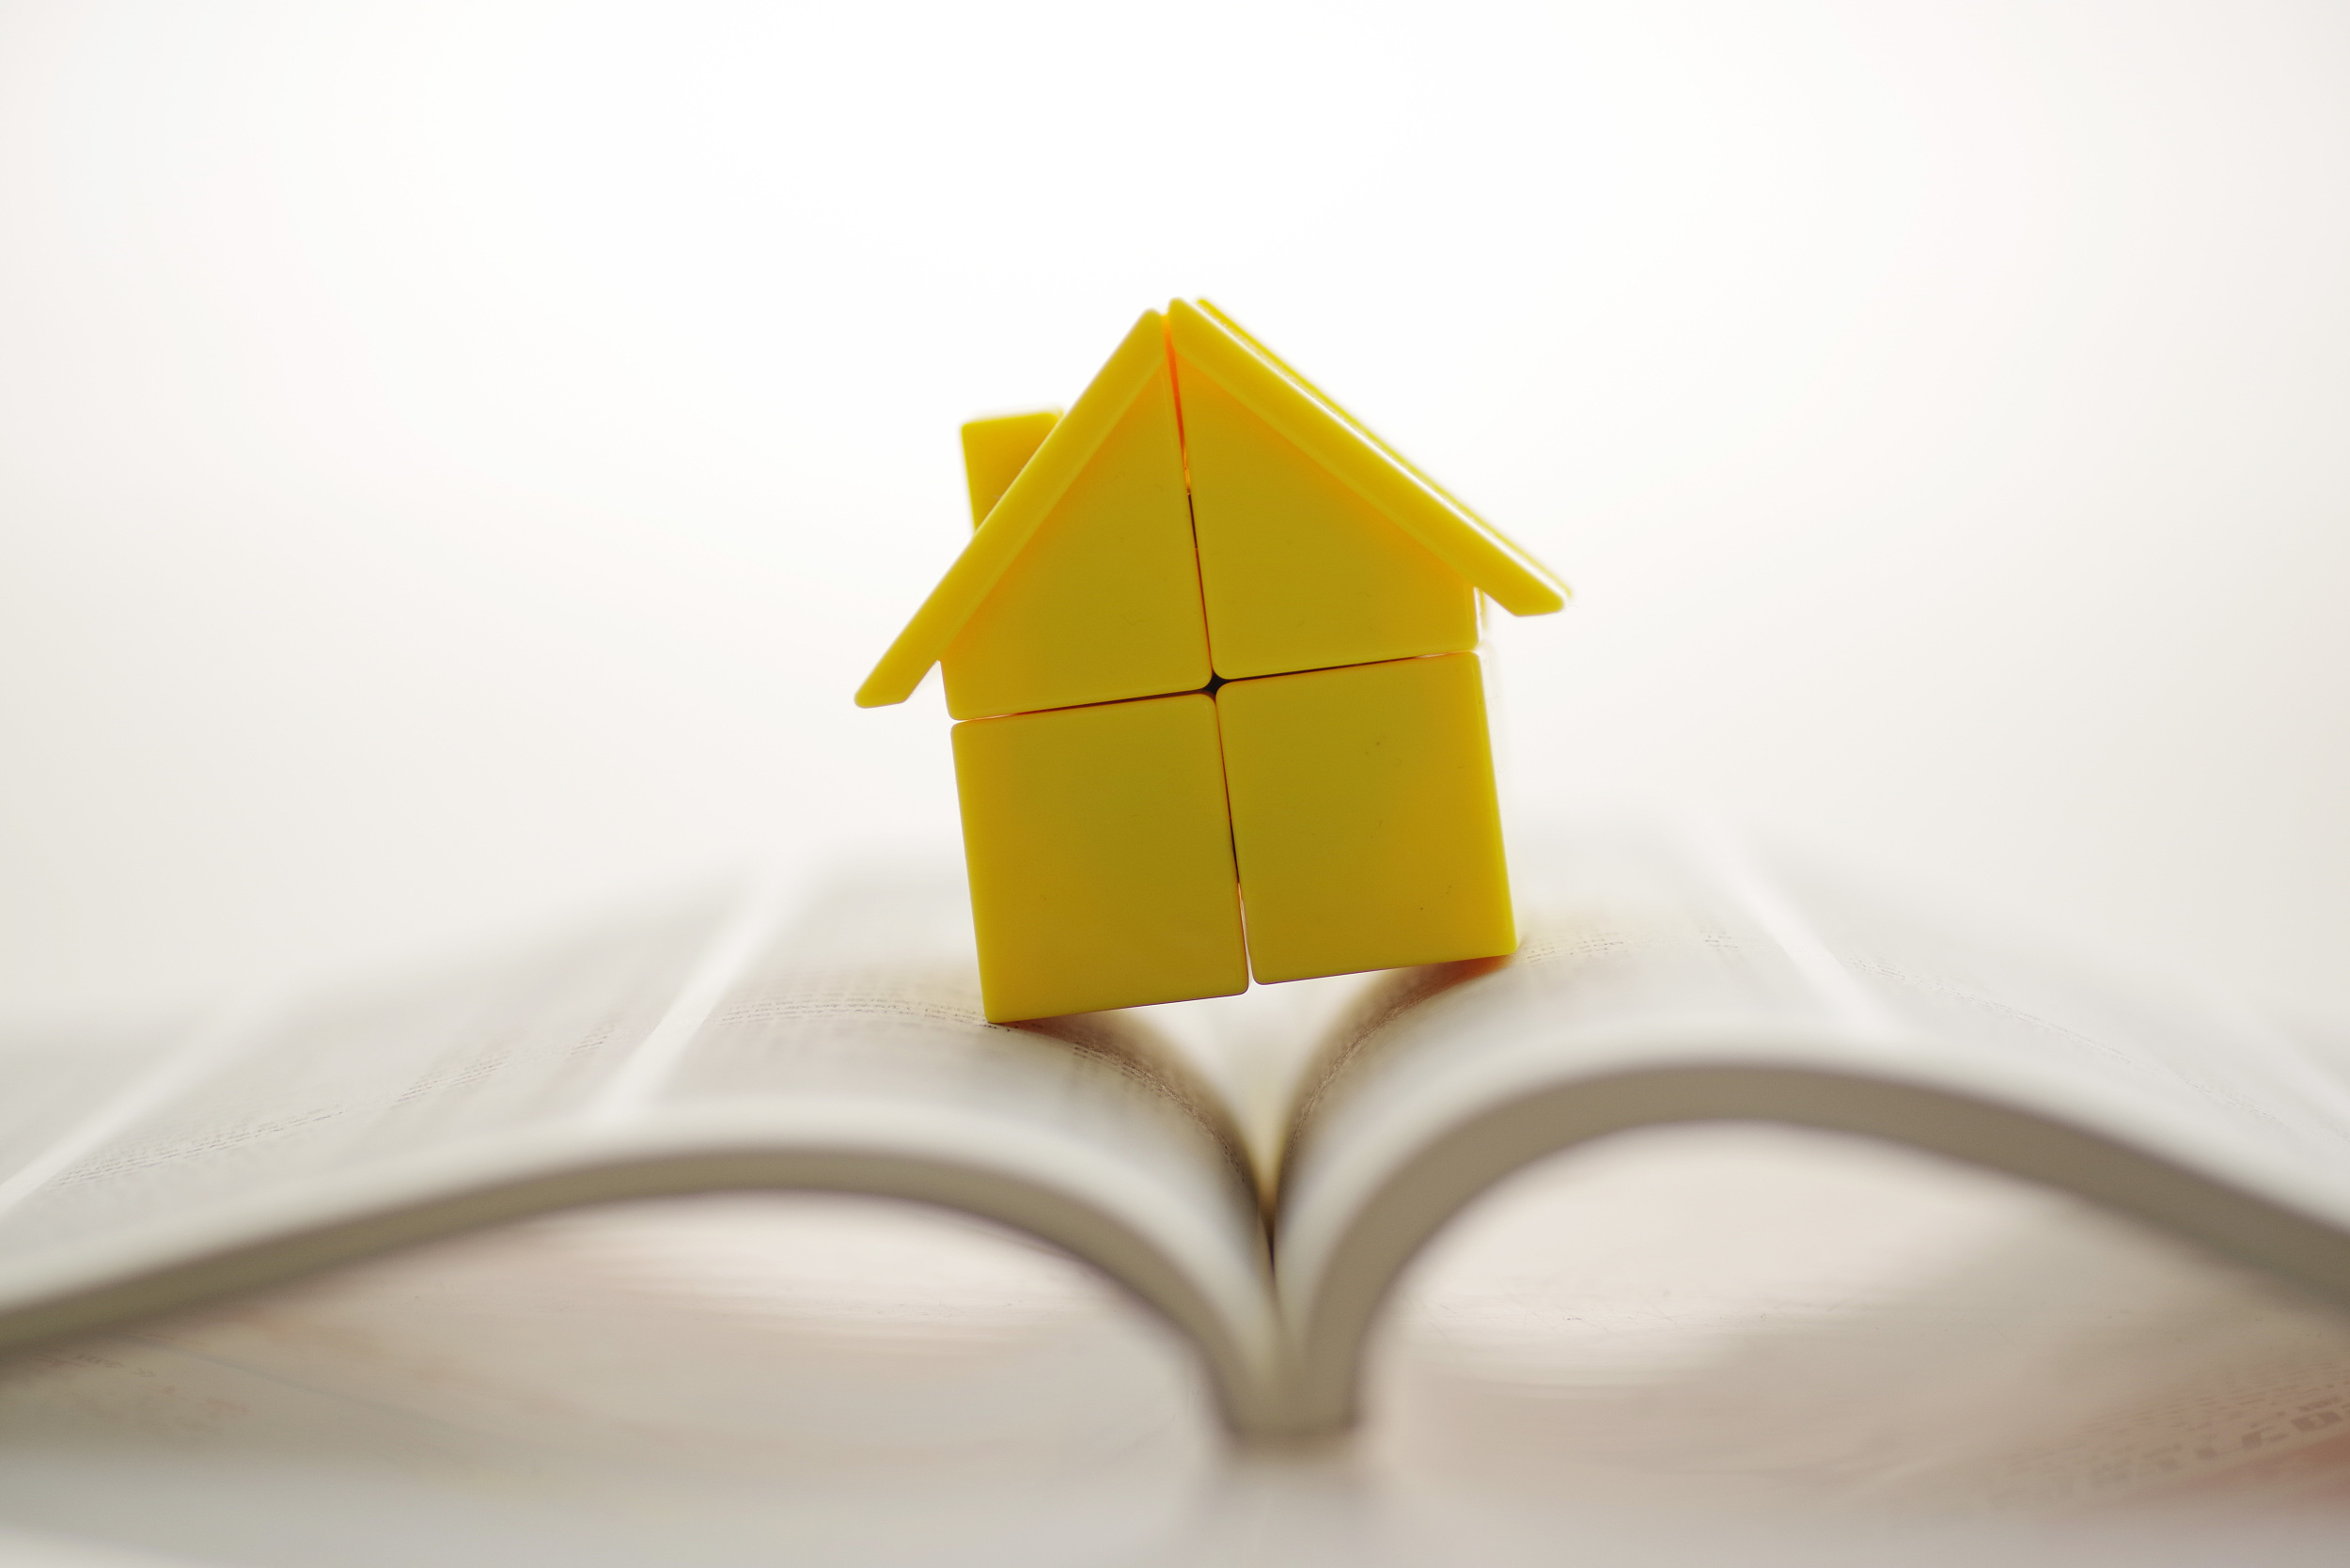 租房提取、申請公積金貸款需提供房產證明